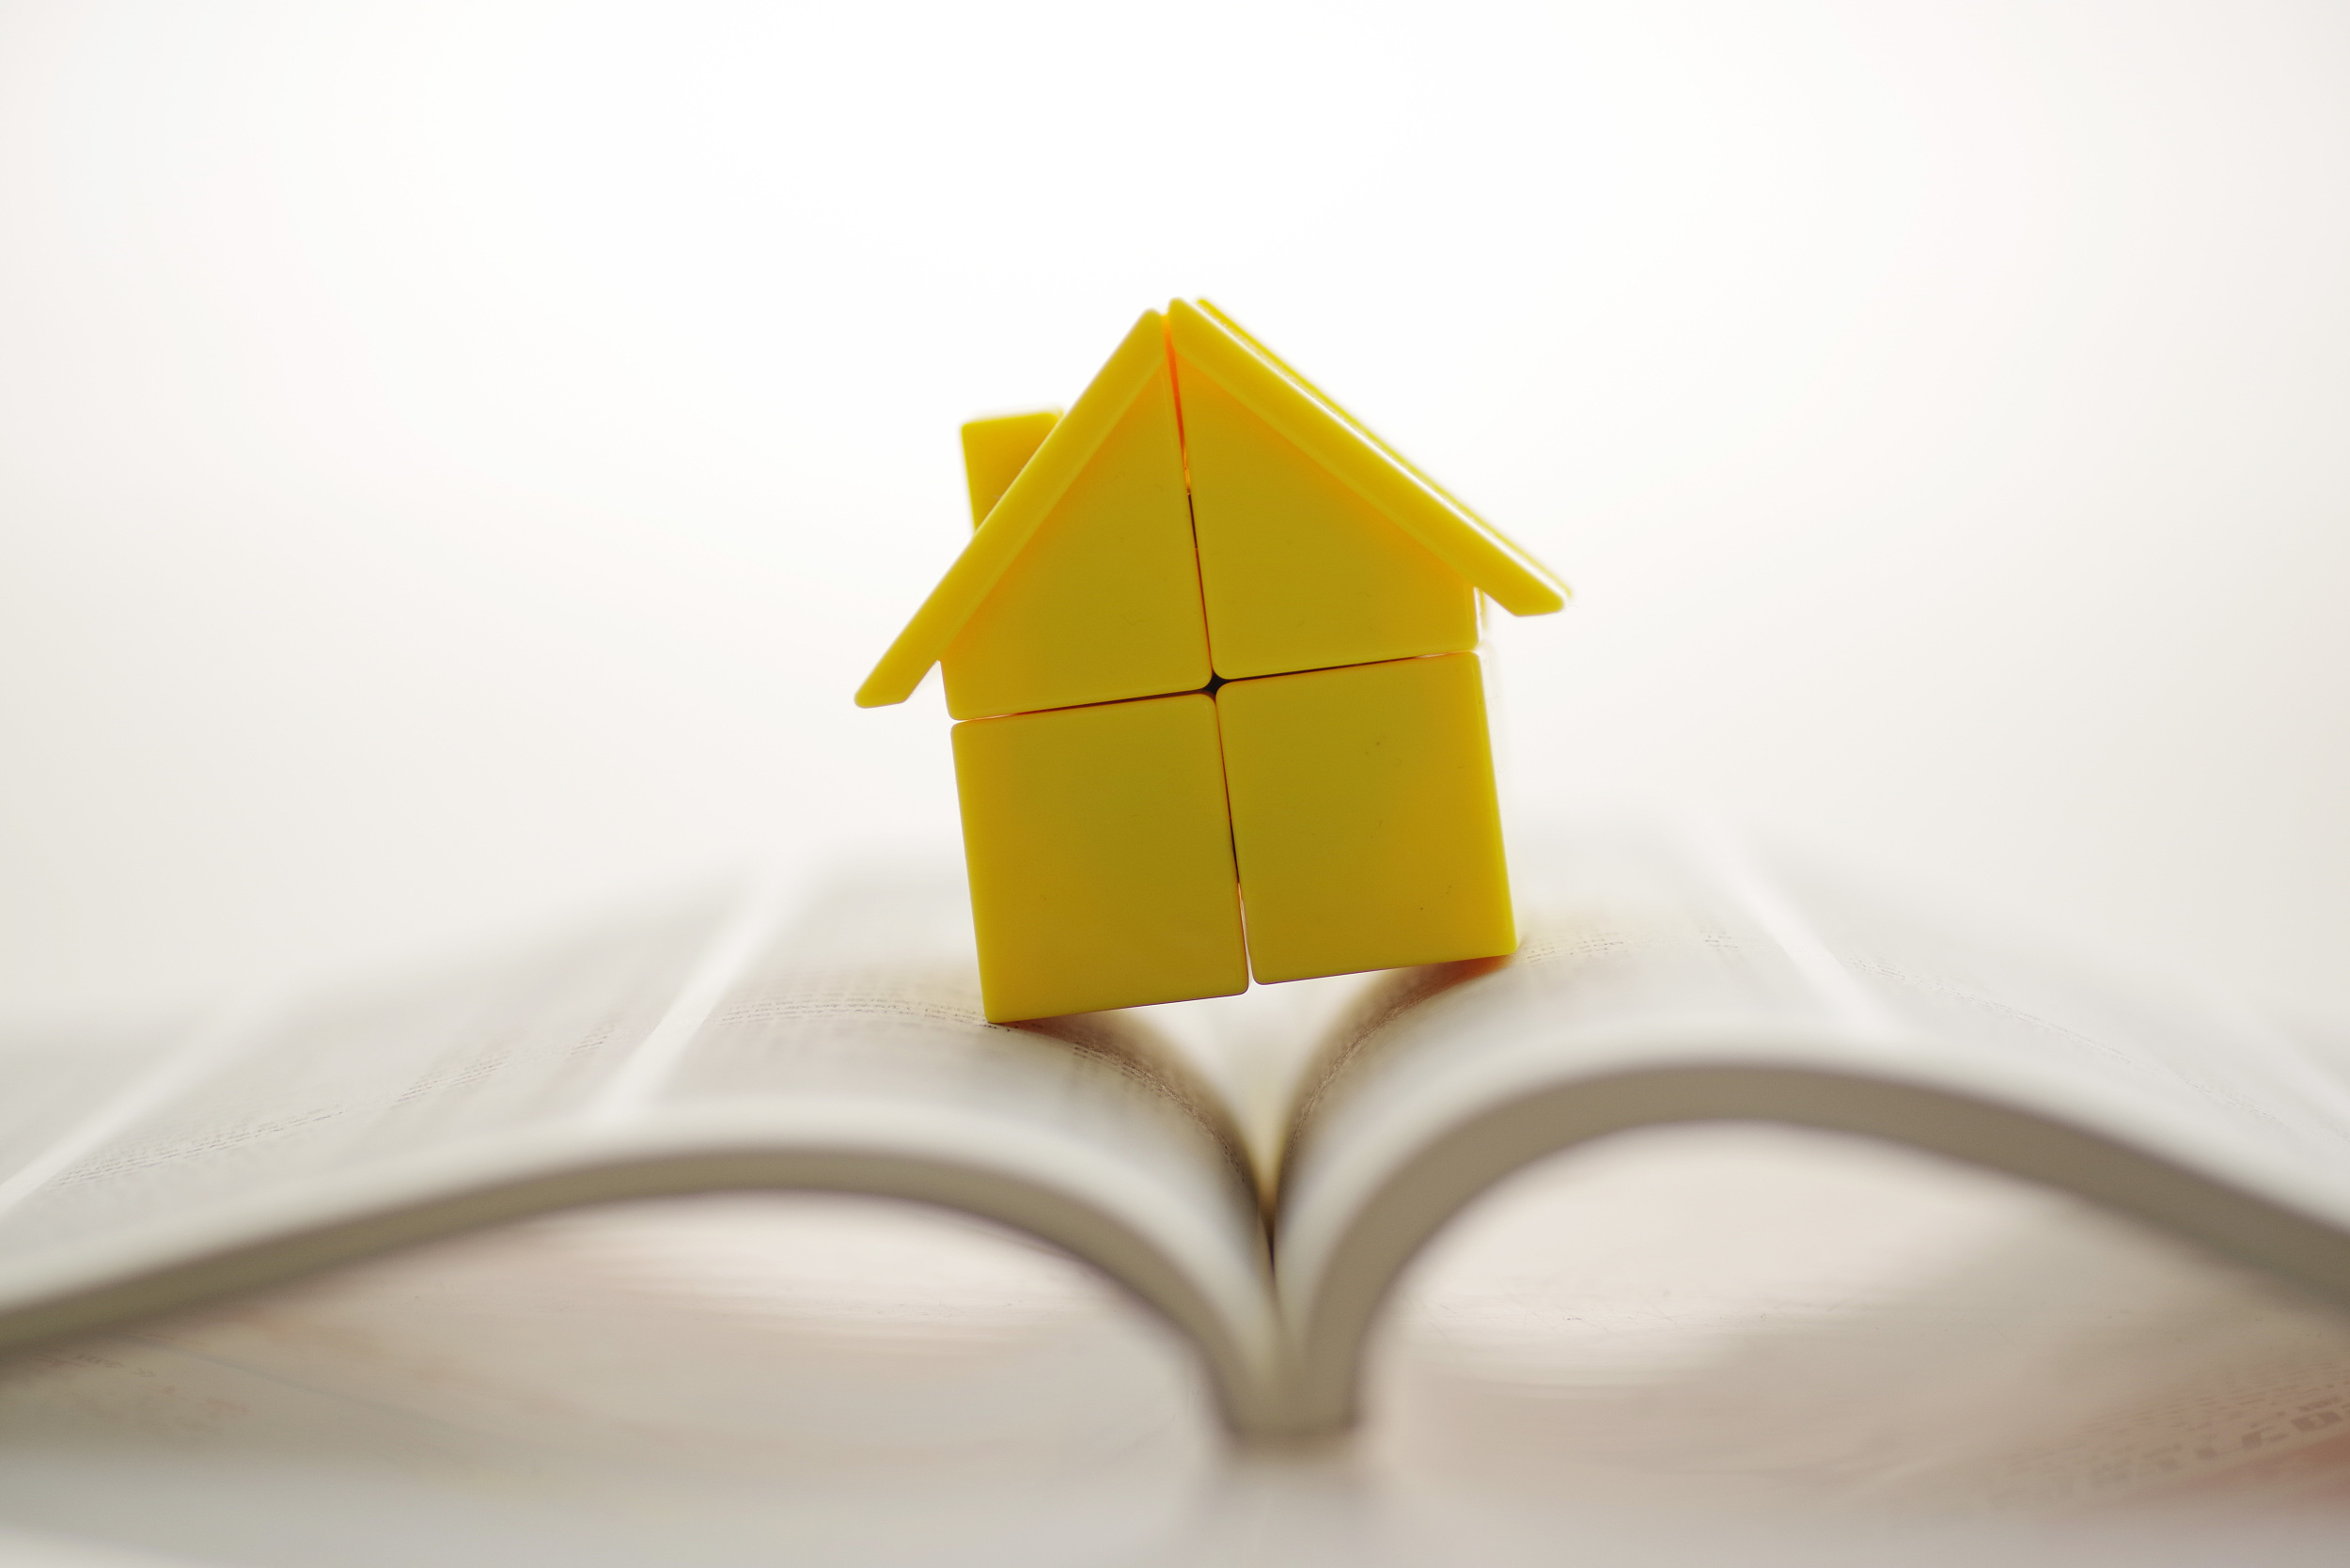 租房提取、申請公積金貸款需提供房產證明